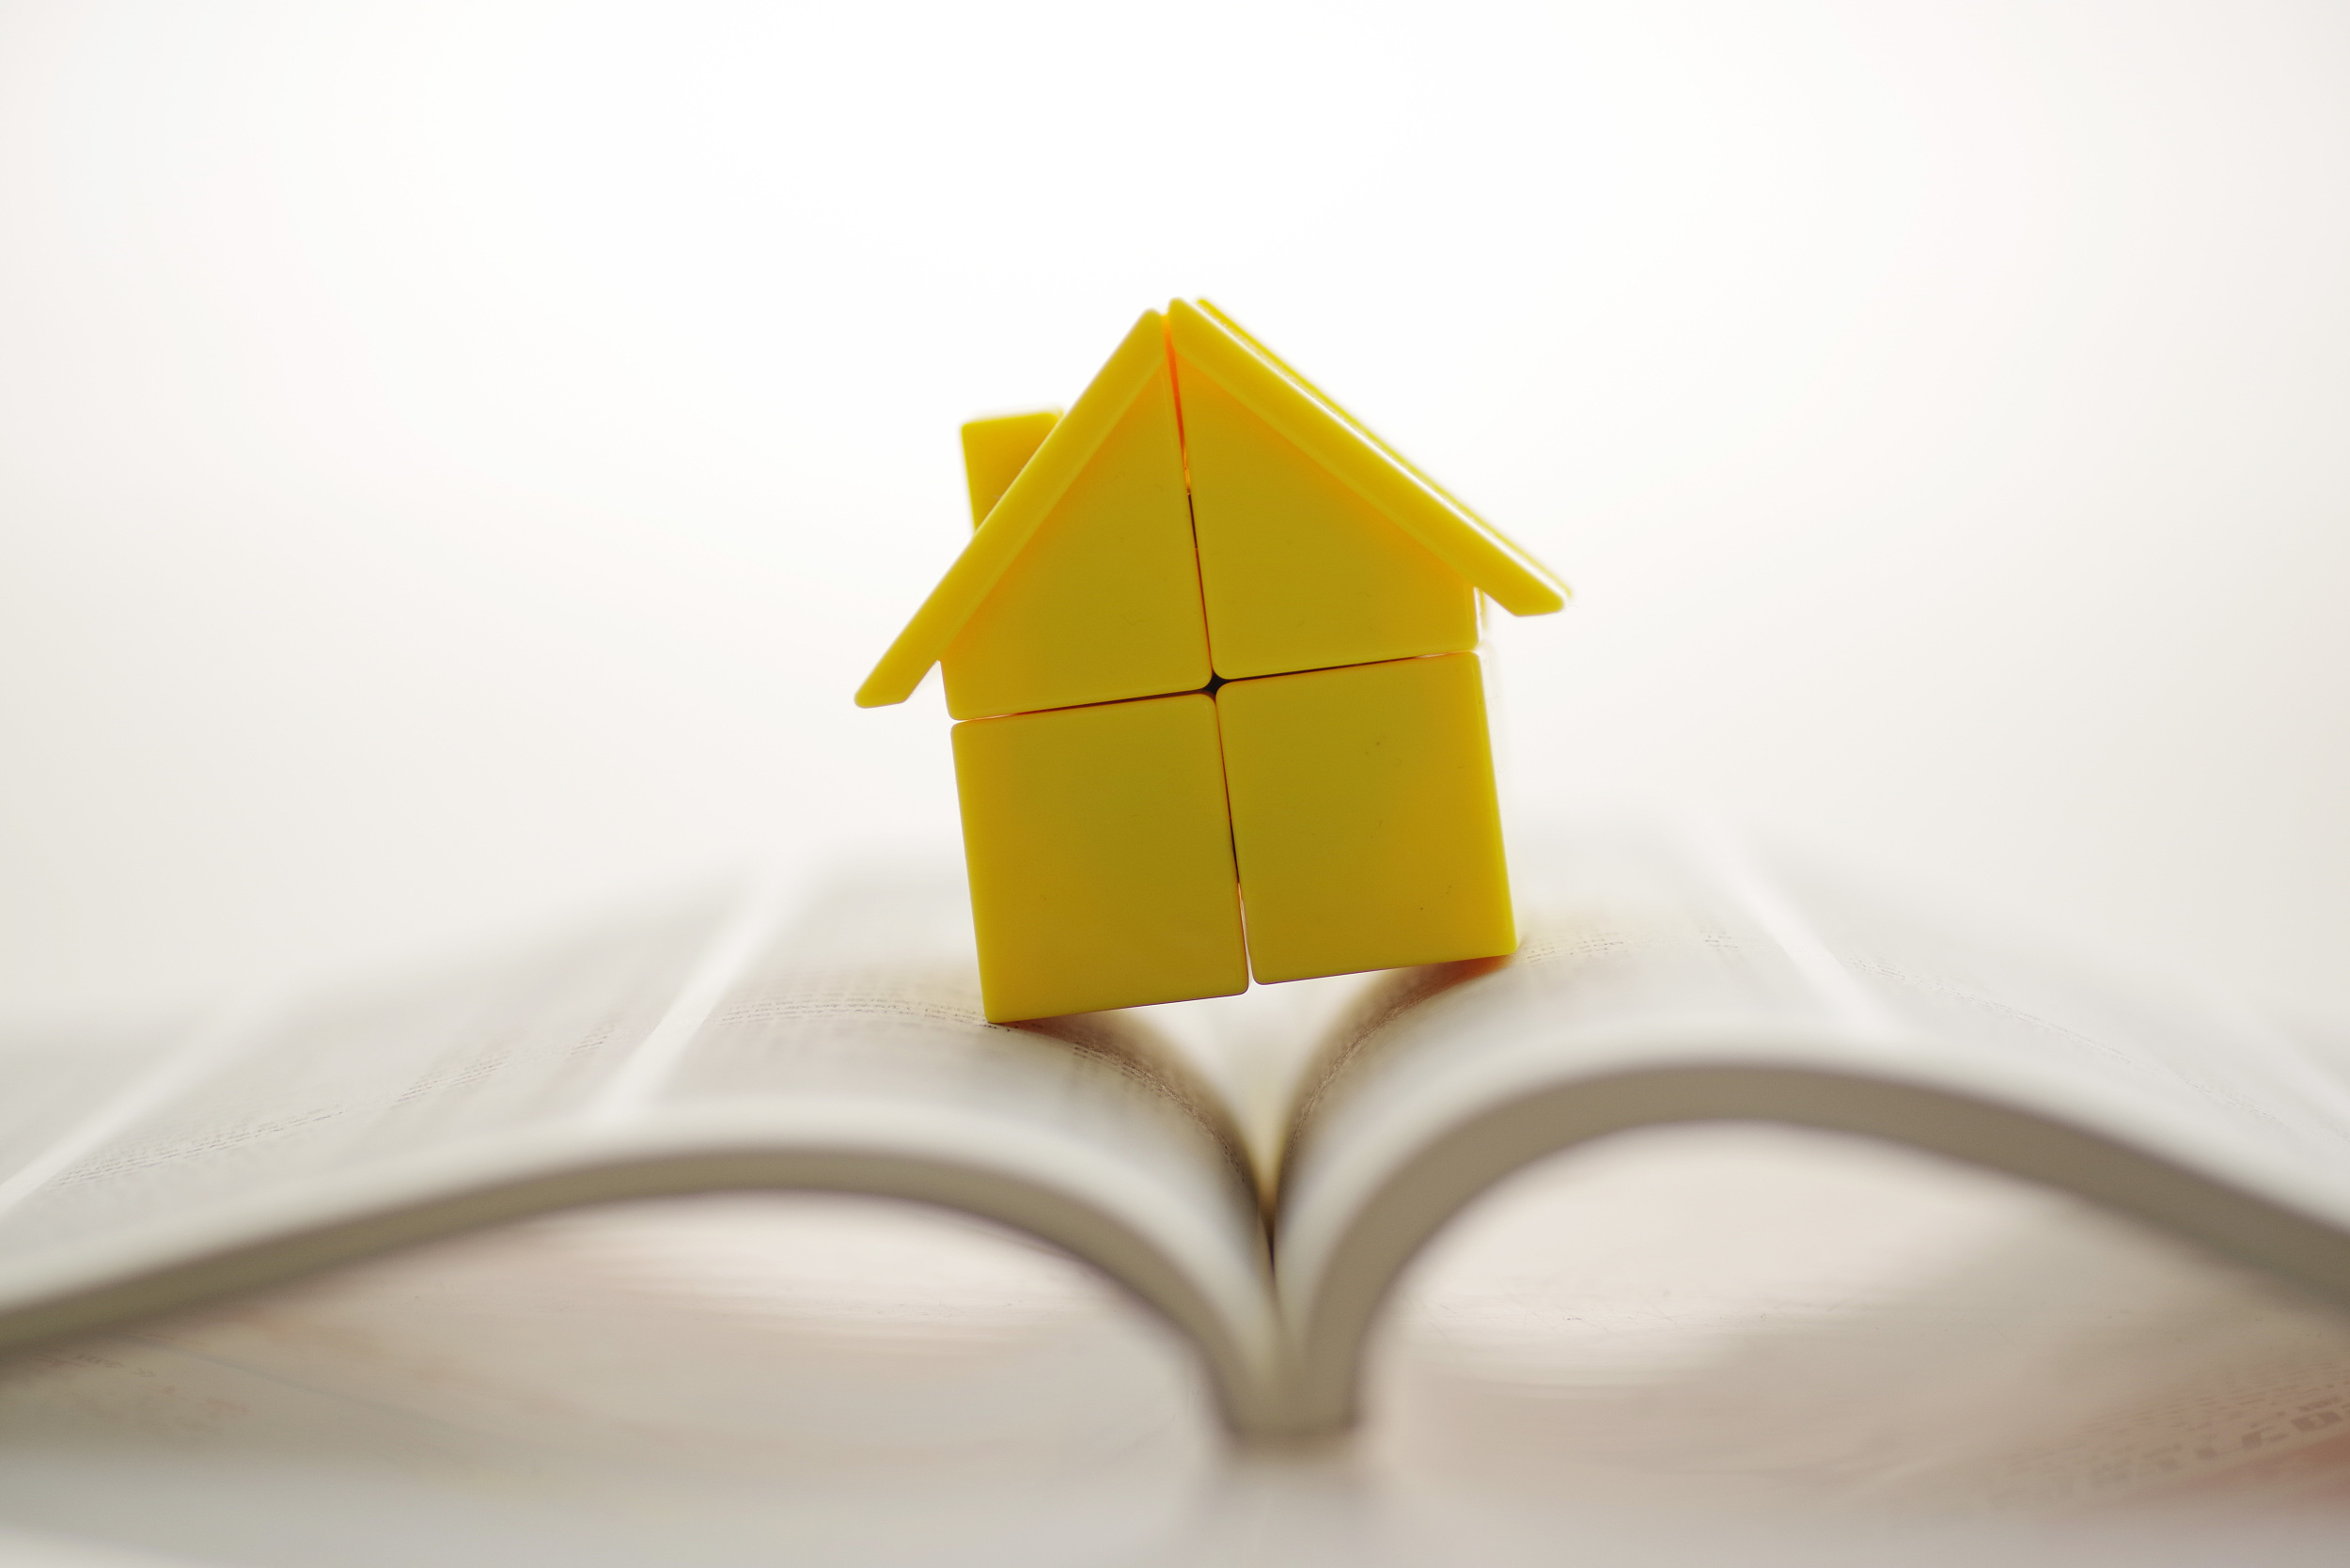 租房提取、申請公積金貸款需提供房產證明